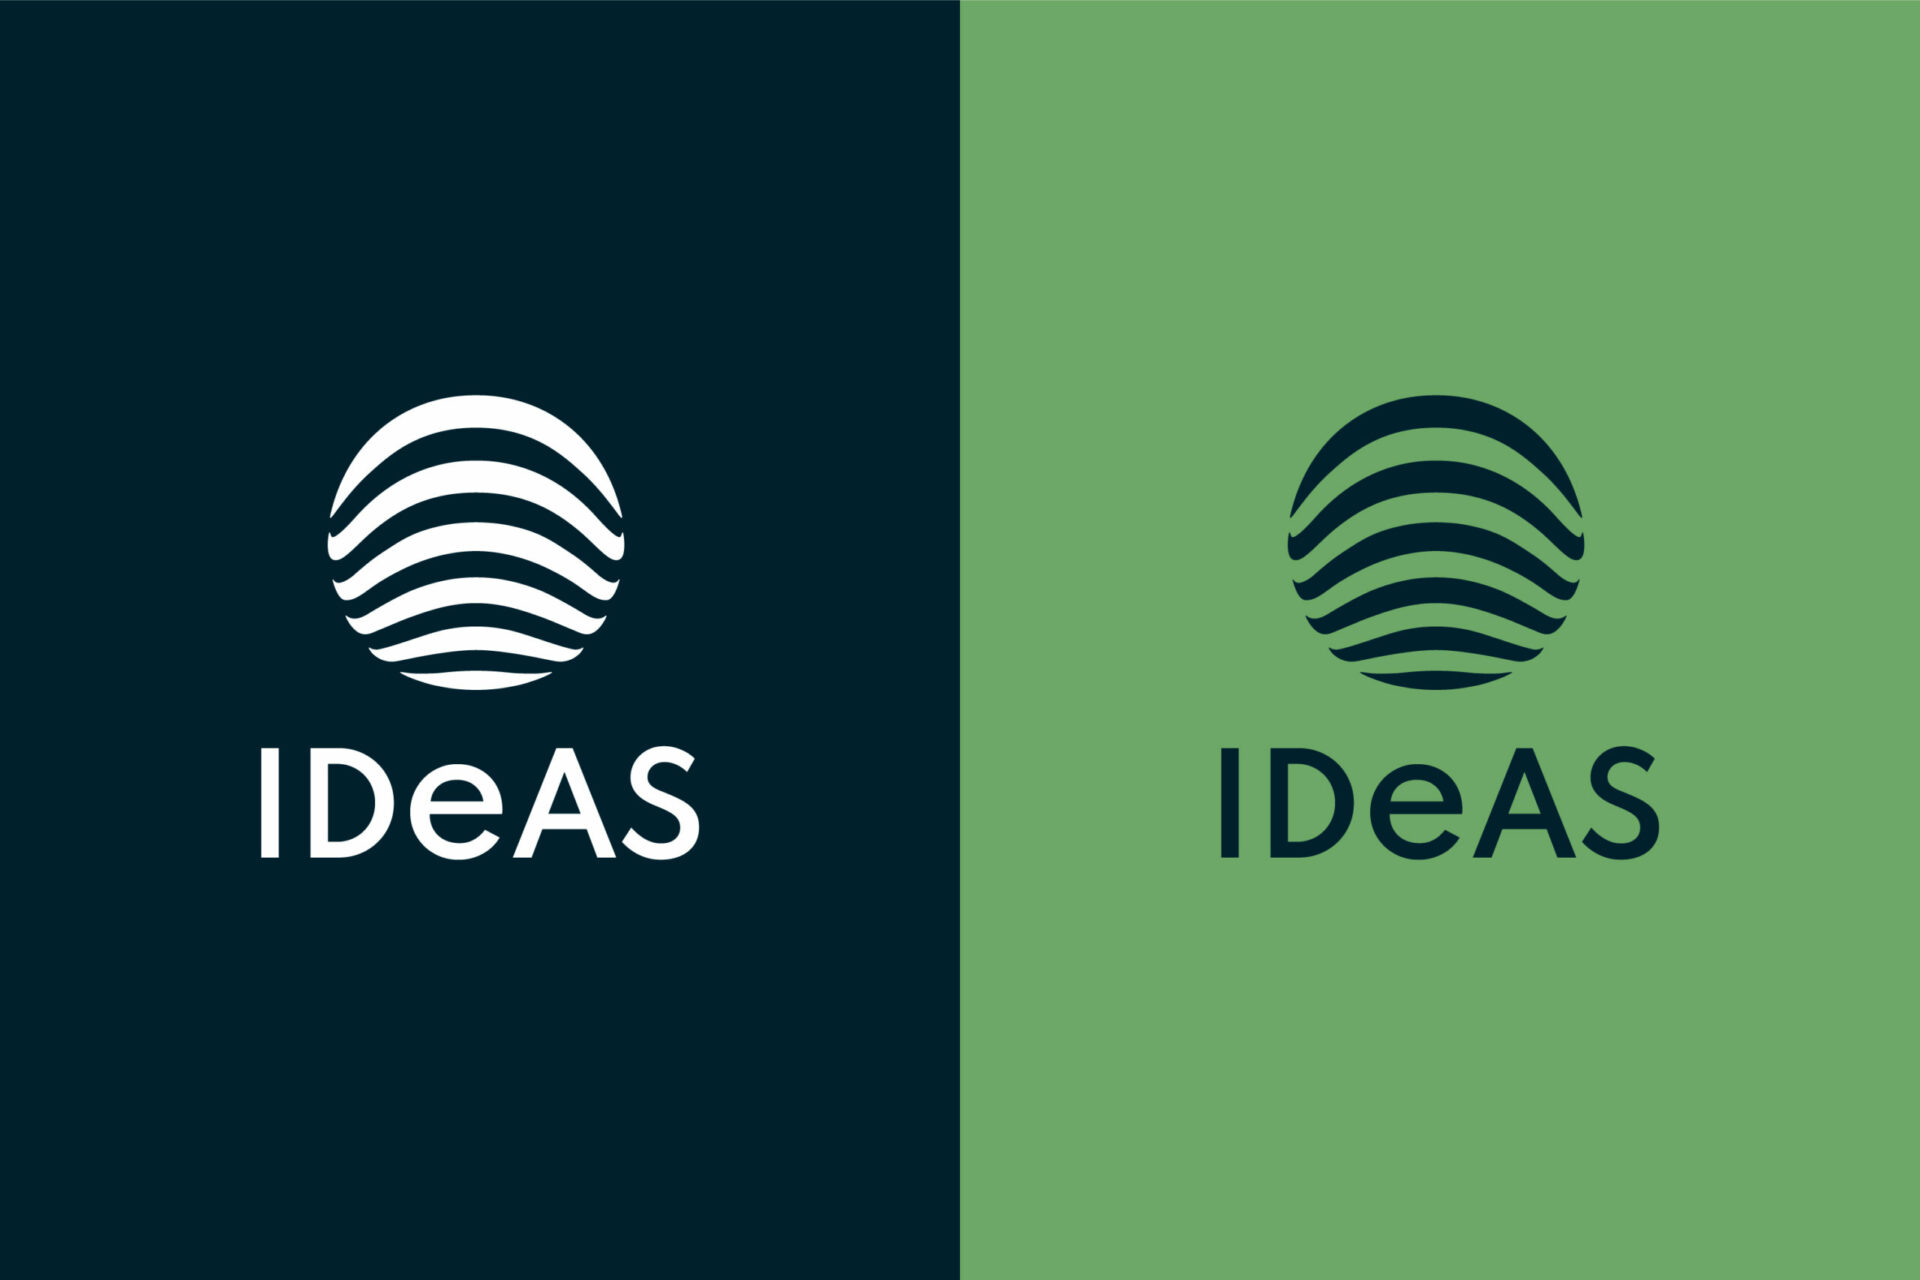 Zwei querformatige IDeAS Logos. Ein weißes Logo auf dunkelblauem Hintergrund und ein zweites blaues Logo auf grünem Hintergrund.